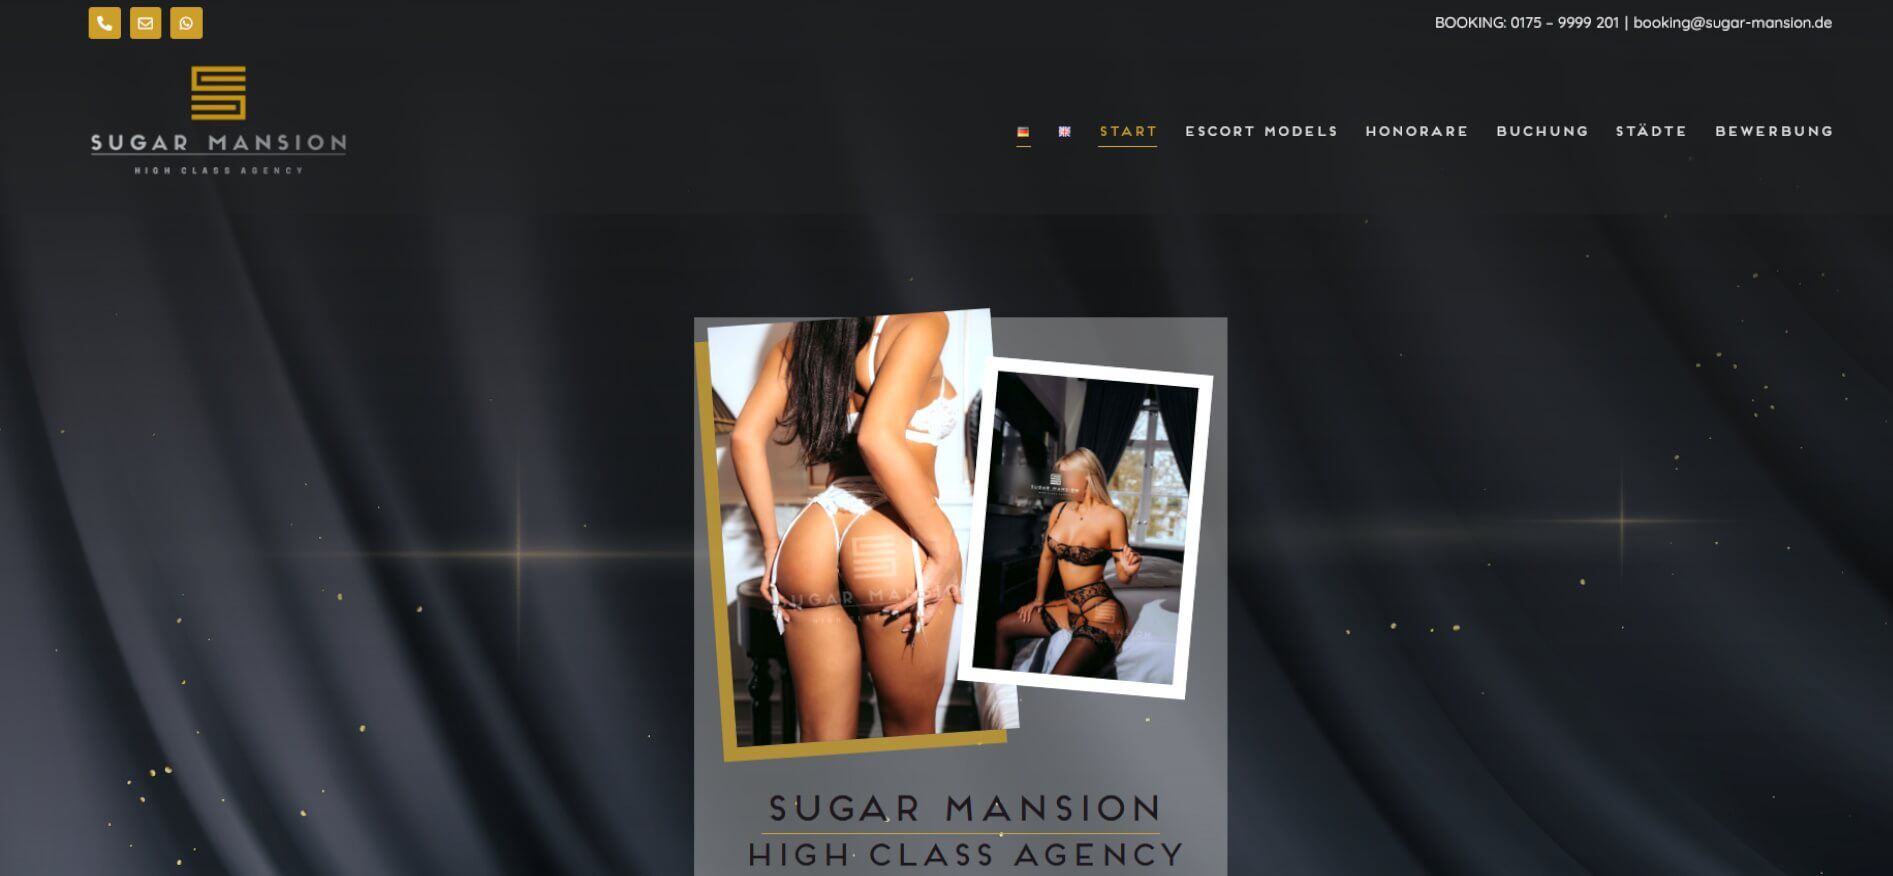 Webseite erstellt für den Sugar-Mansion Escort-Service